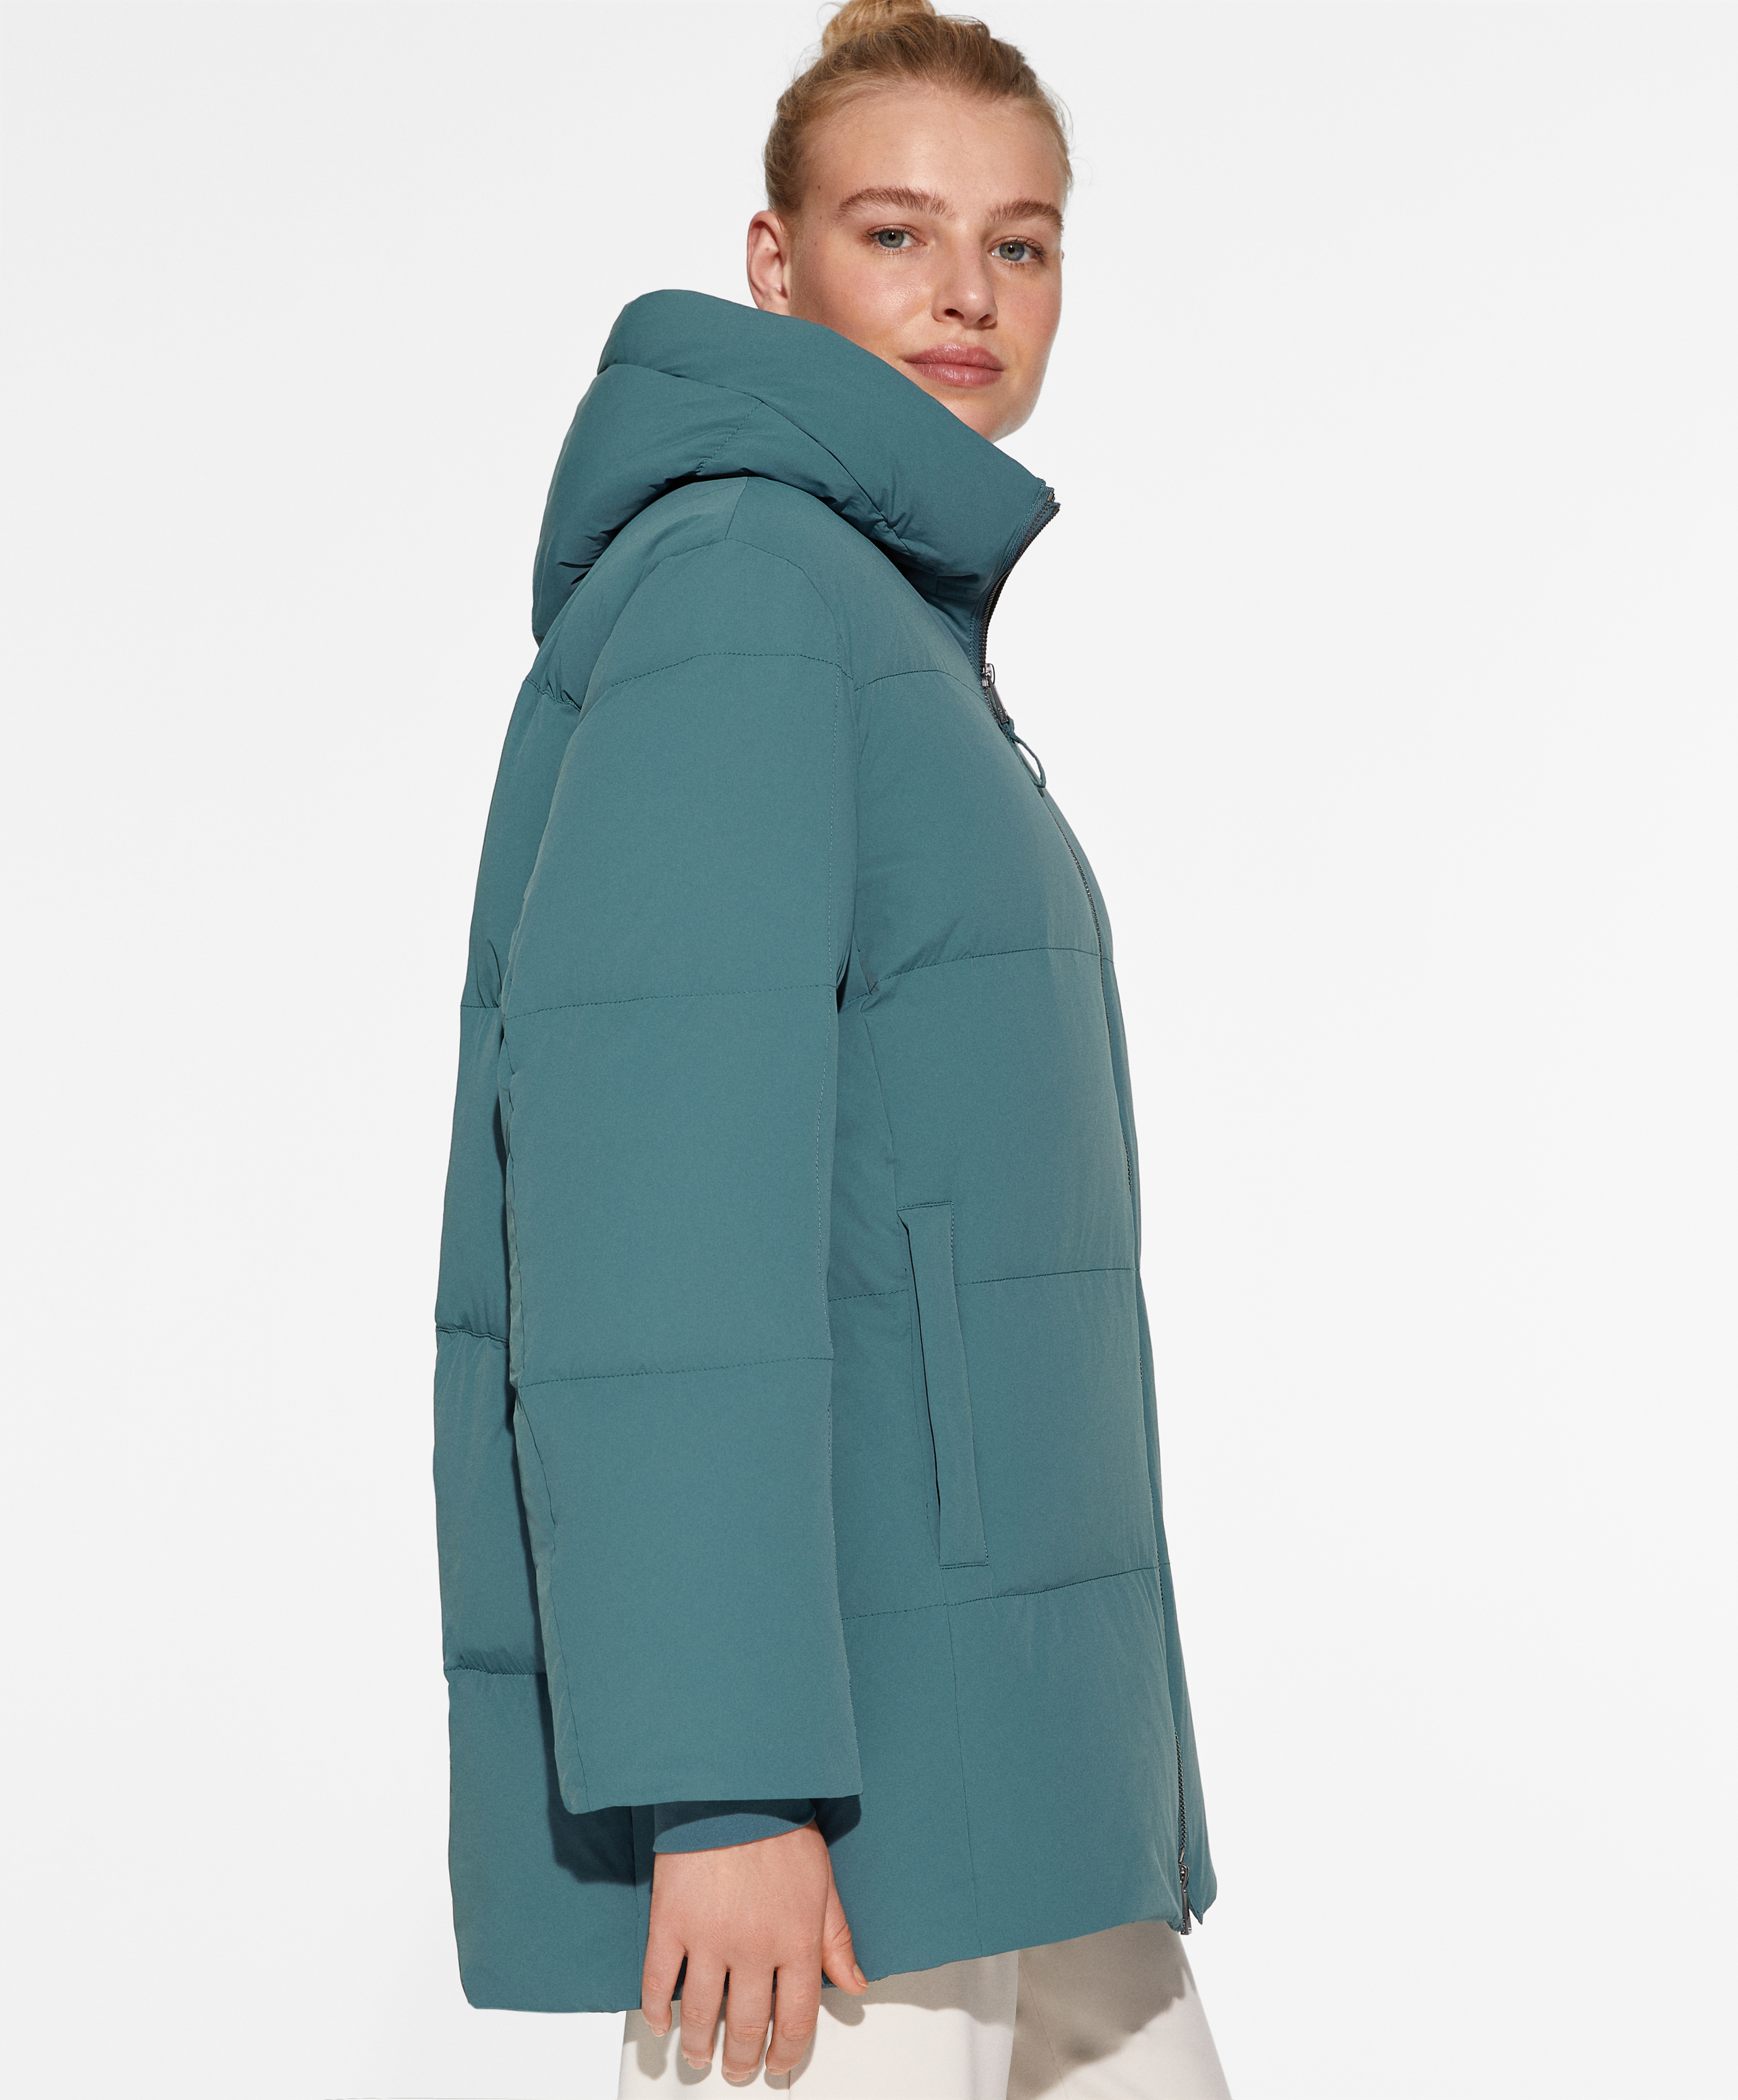 YOGALULU Plumas Mujer Invierno Rebajas chaqueta acolchada de algodón,  chaleco con capucha, bolsillo con cremallera, abrigo suelto de manga larga